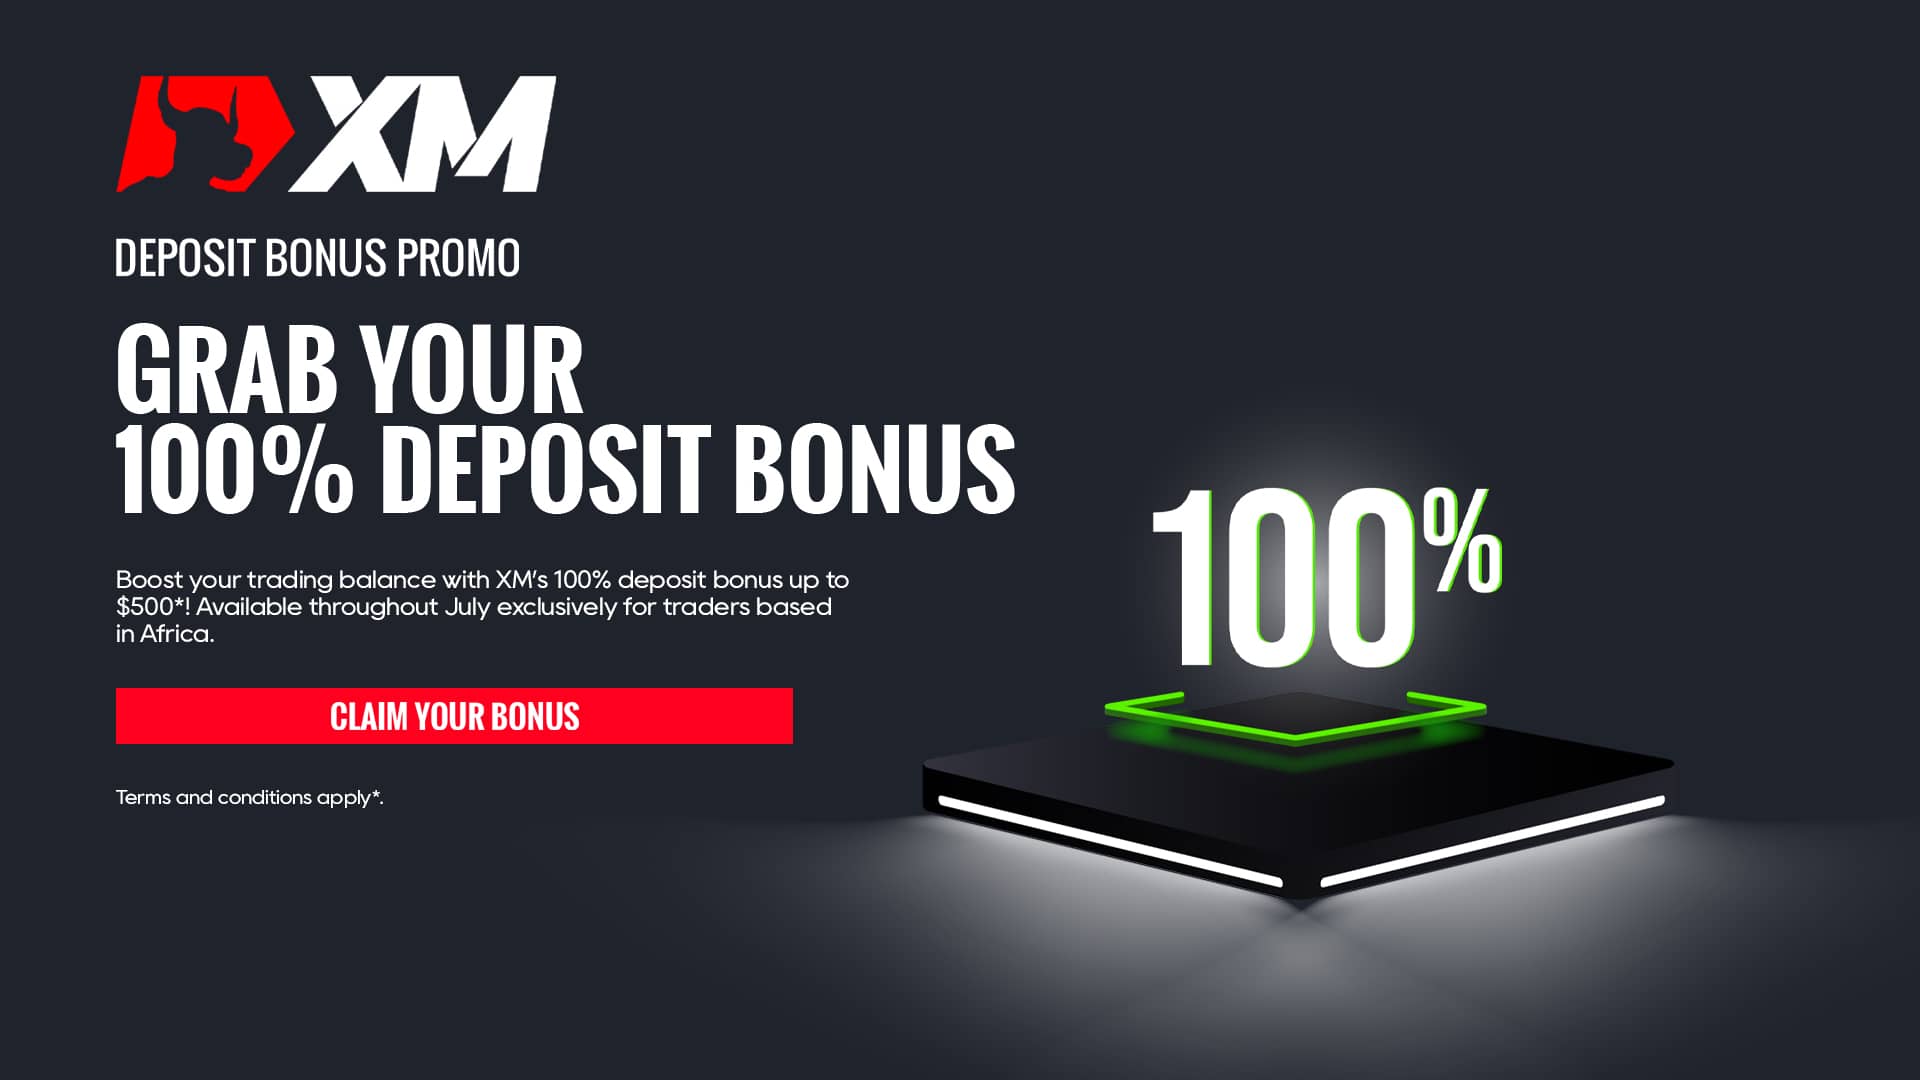 100% Deposit Bonus